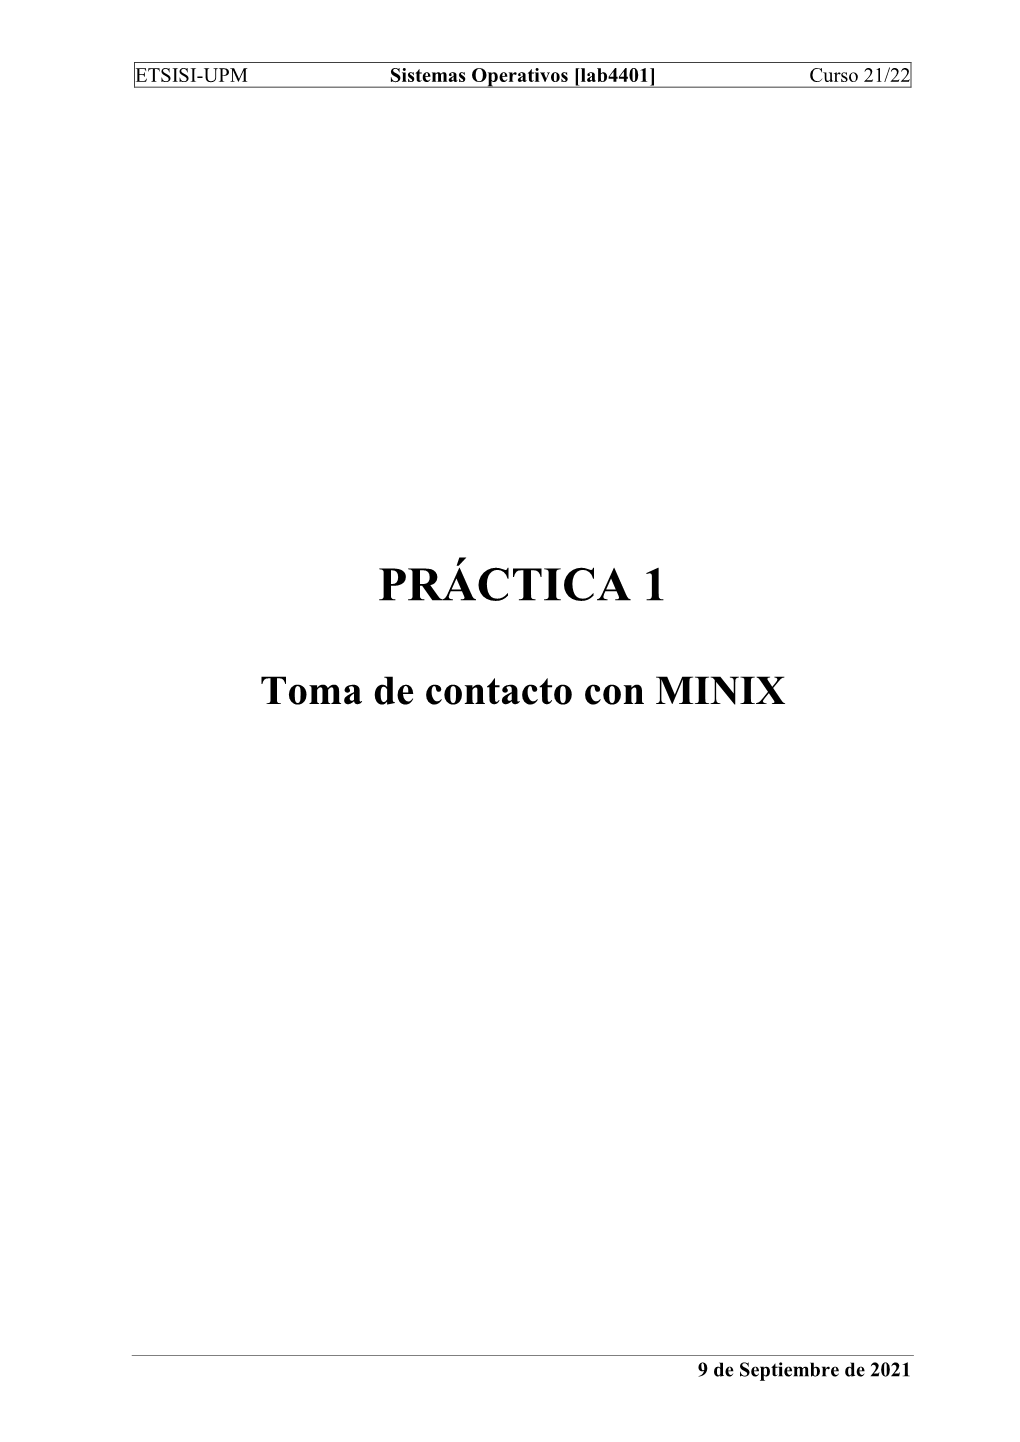 Toma De Contacto Con MINIX